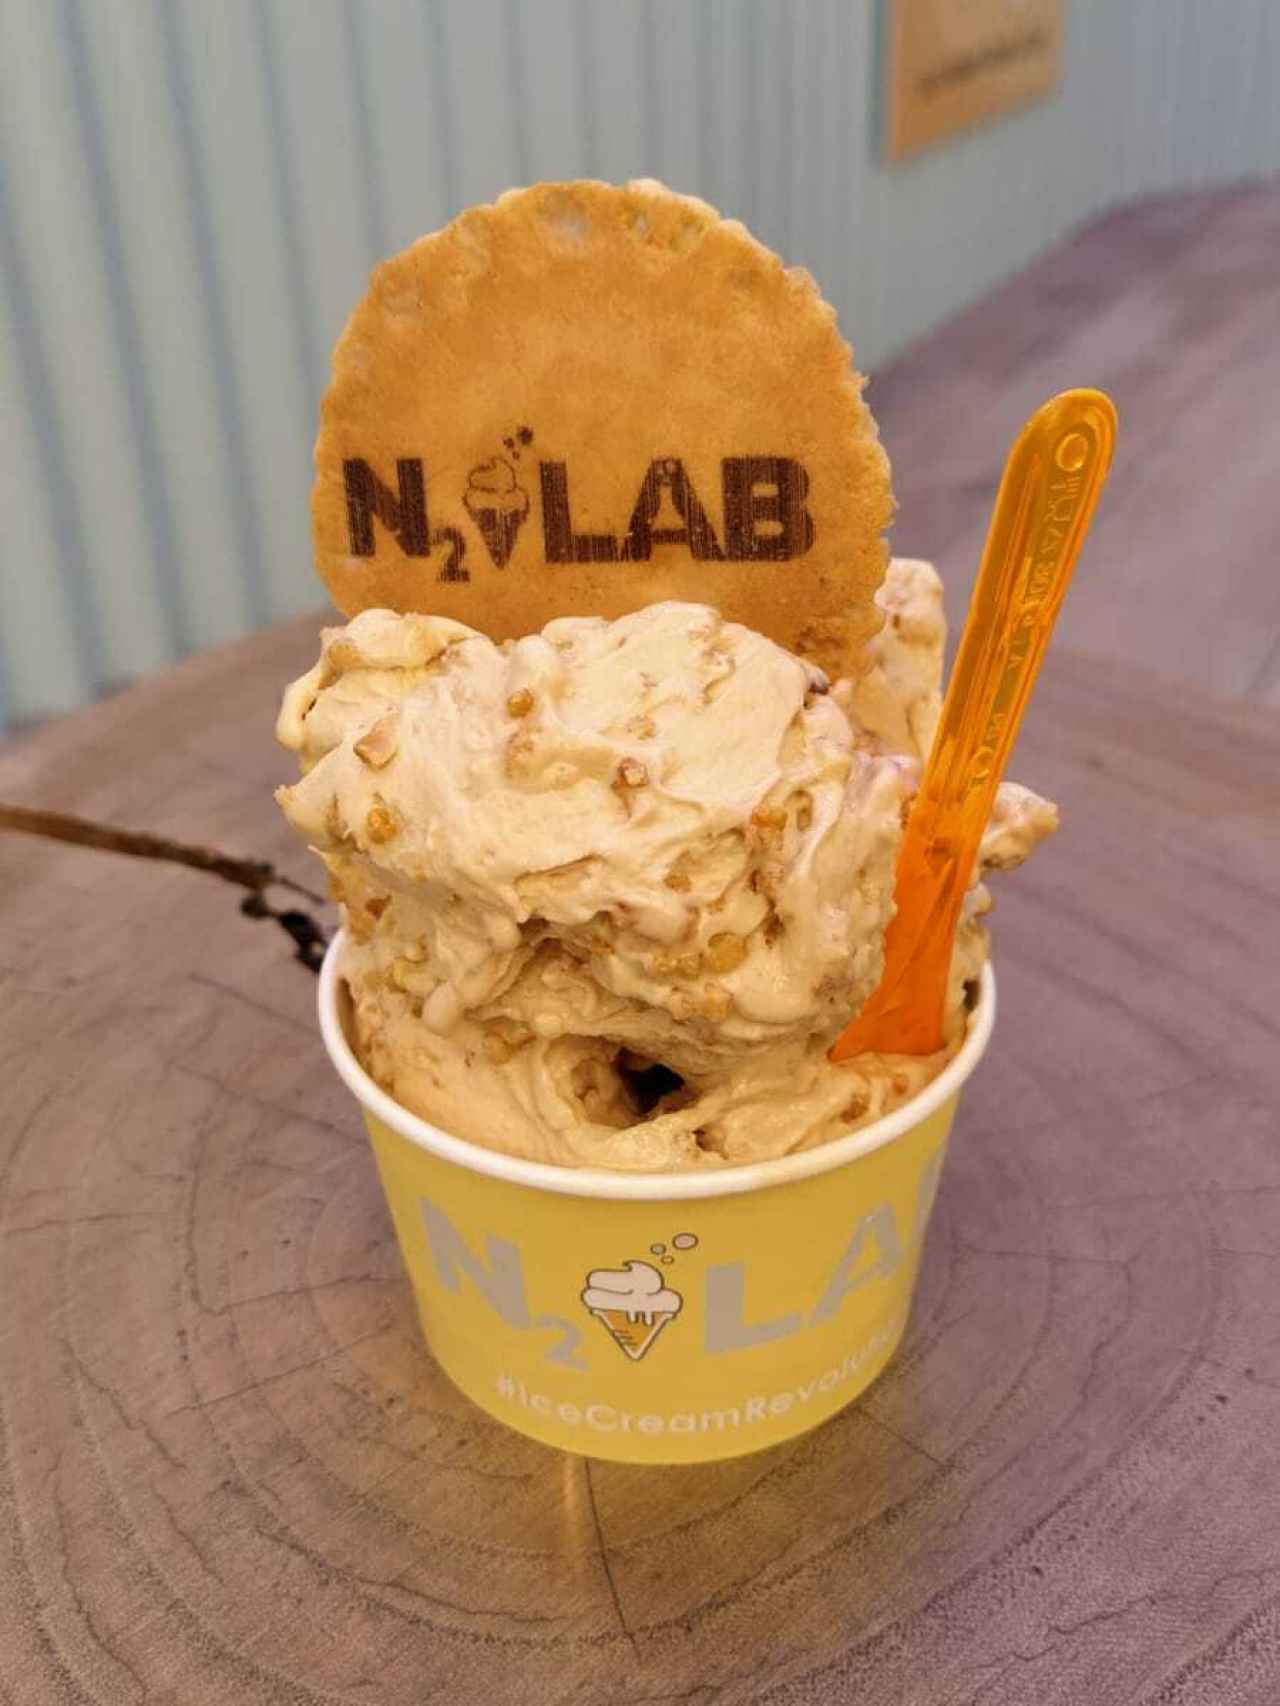 La tarrina de helado de N2 Lab, que contiene una bola de helado de caramelo con un 'topping'.